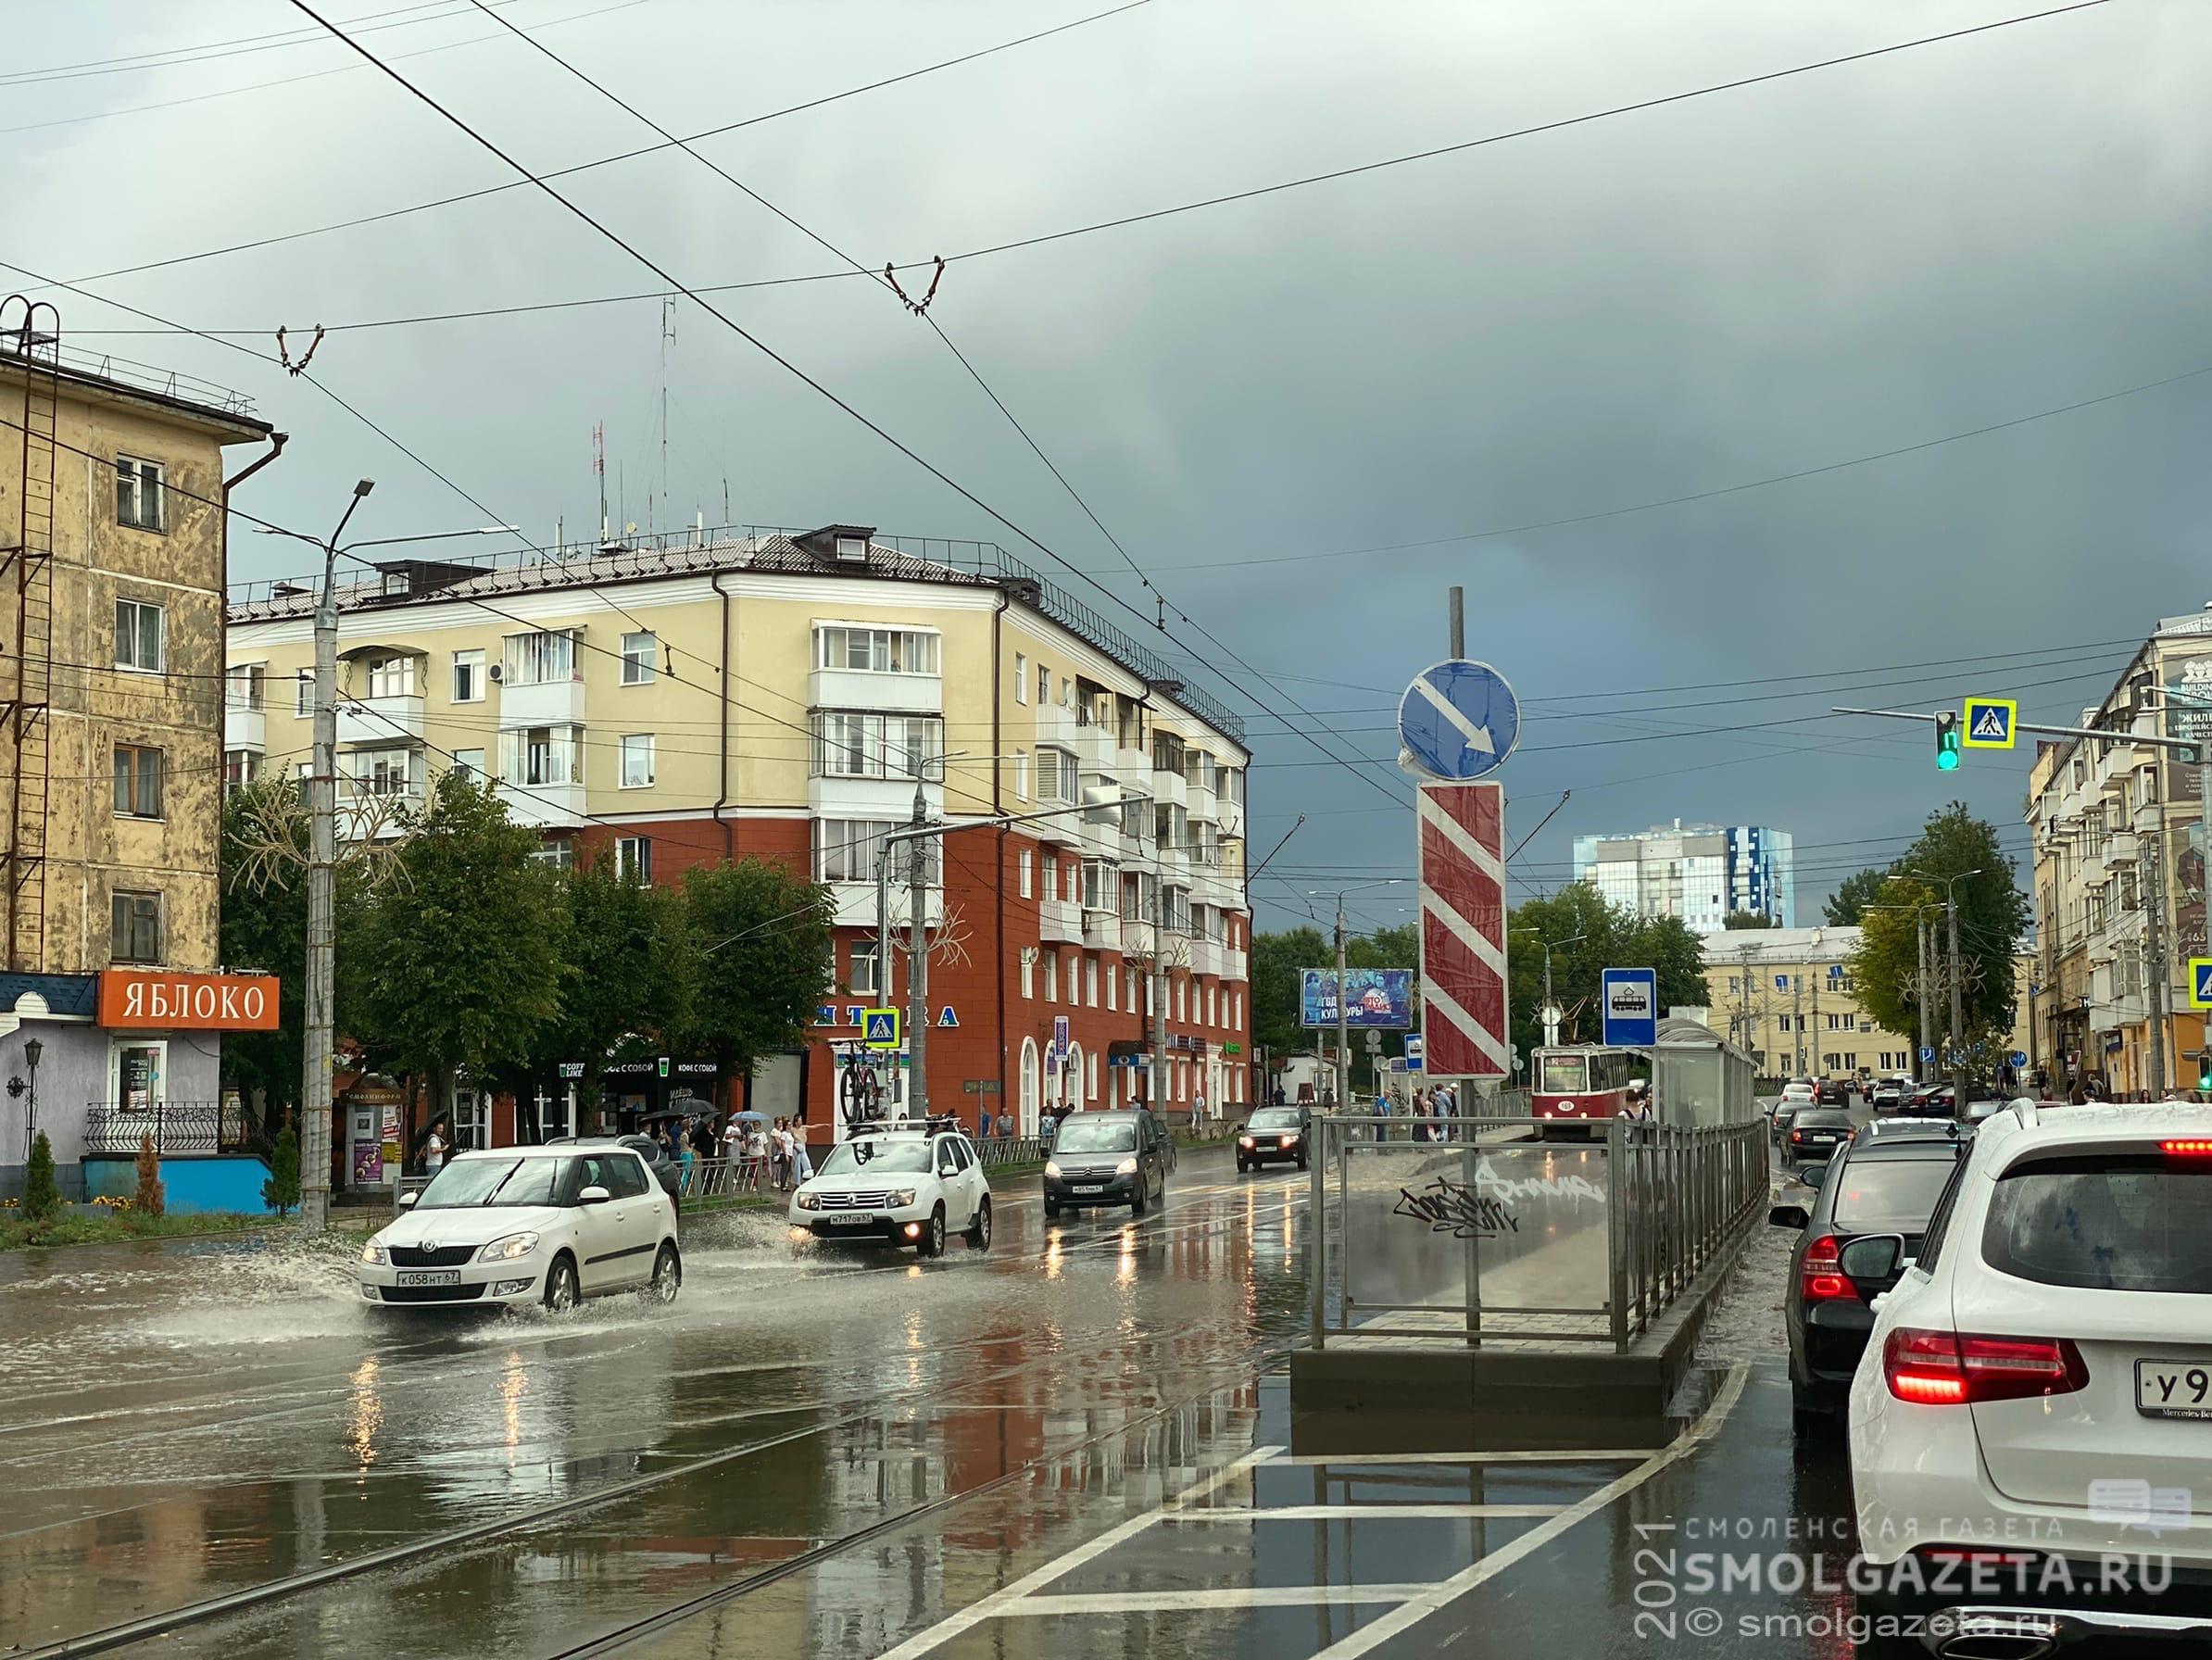 3 сентября в Смоленской области будет дождливо и ветрено